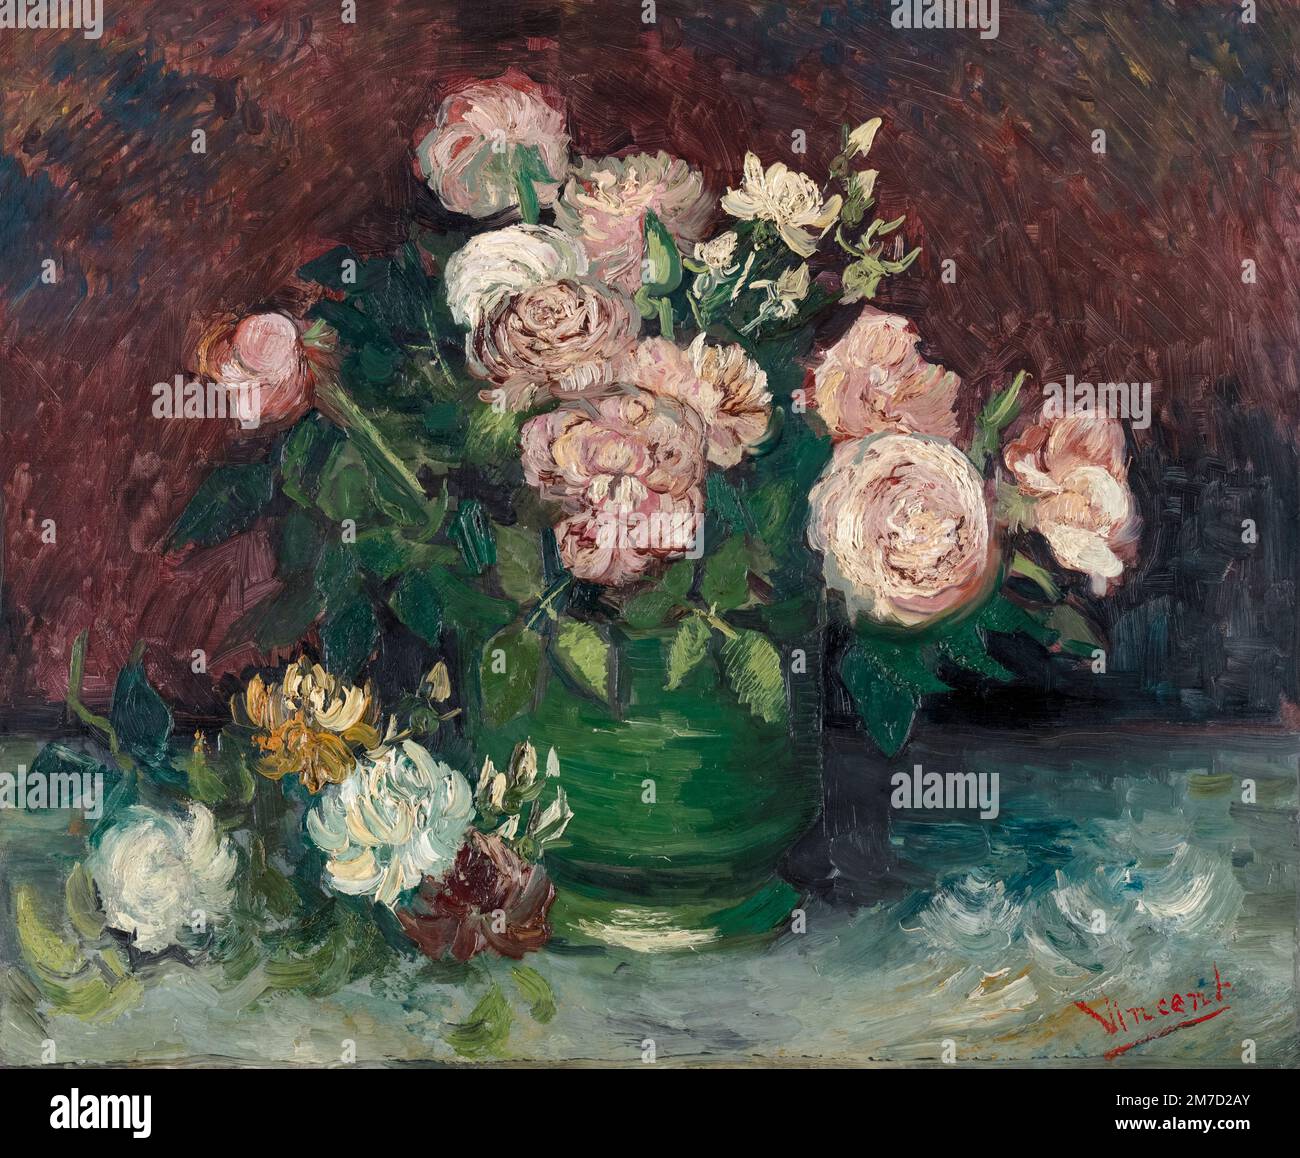 Vincent van Gogh, Roses et pivoines, peinture encore à l'huile sur toile, 1886 Banque D'Images